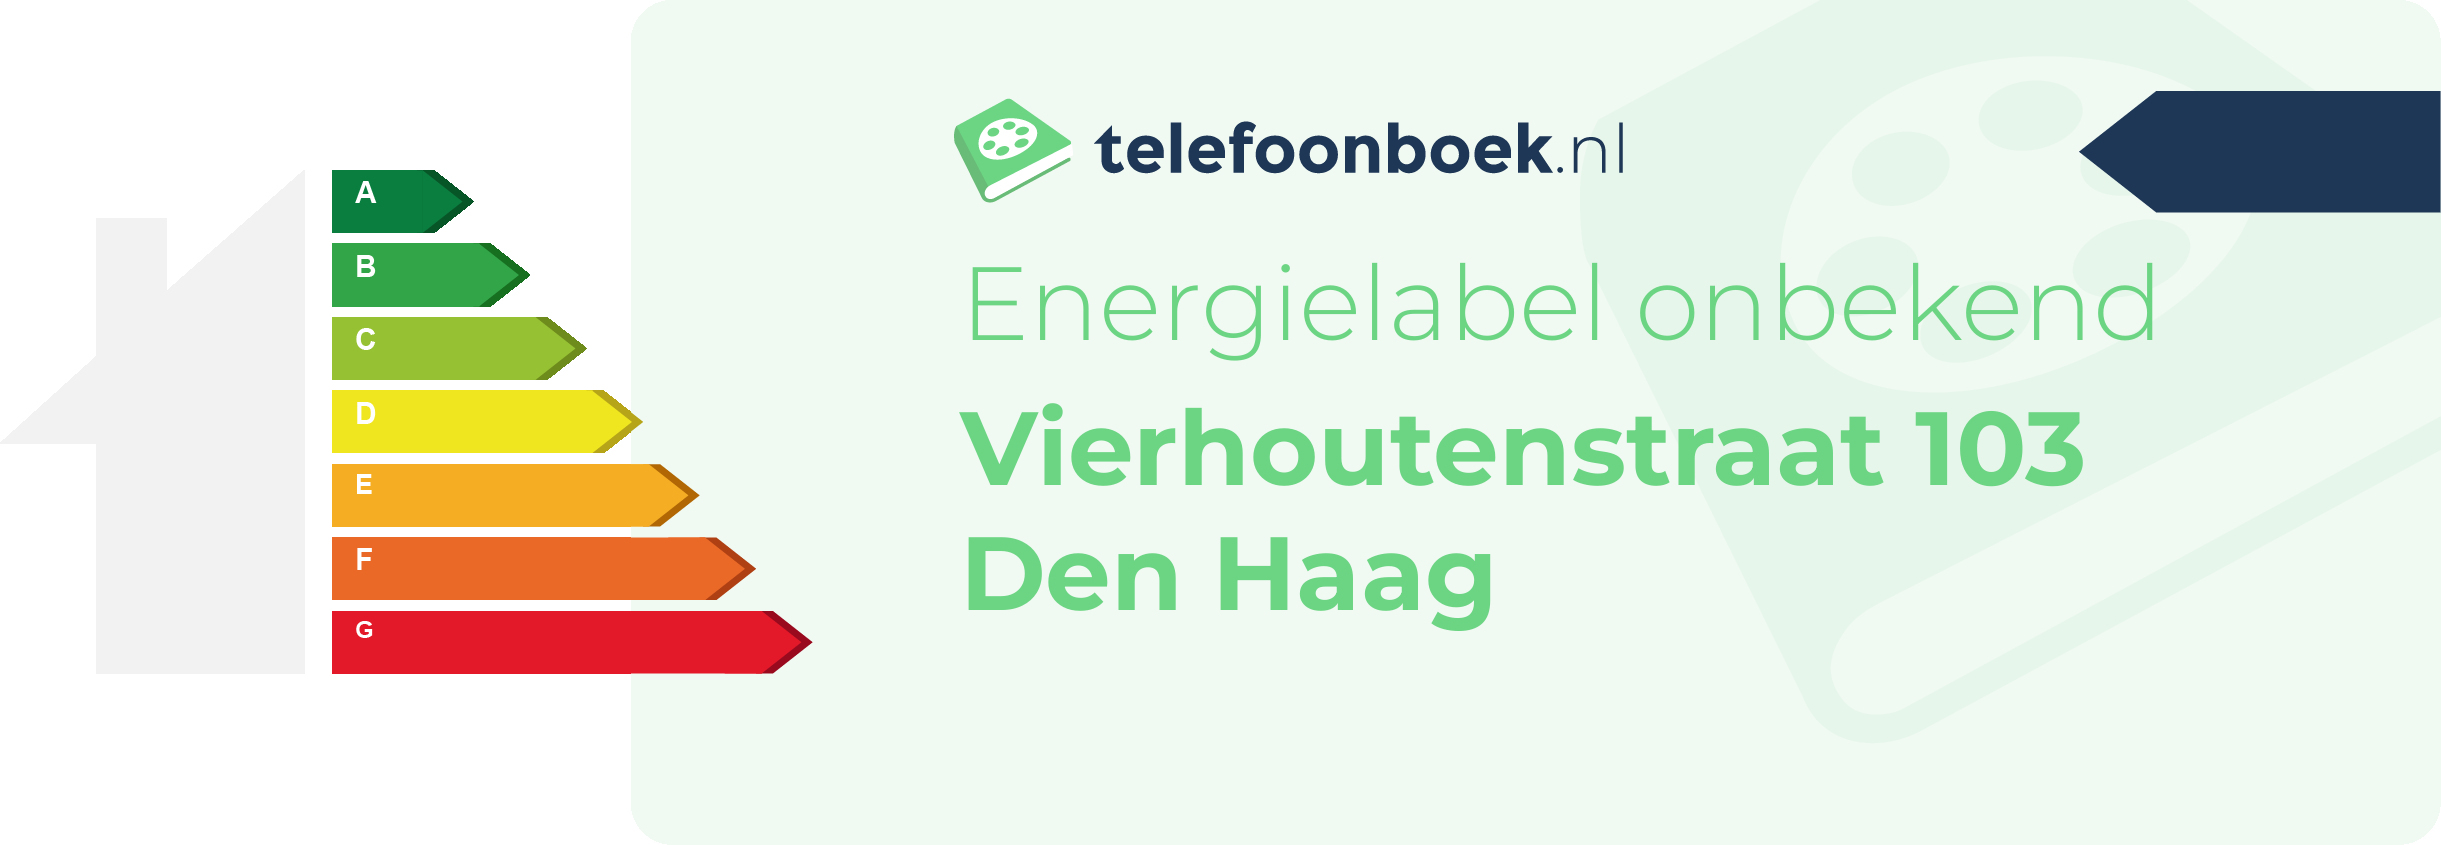 Energielabel Vierhoutenstraat 103 Den Haag